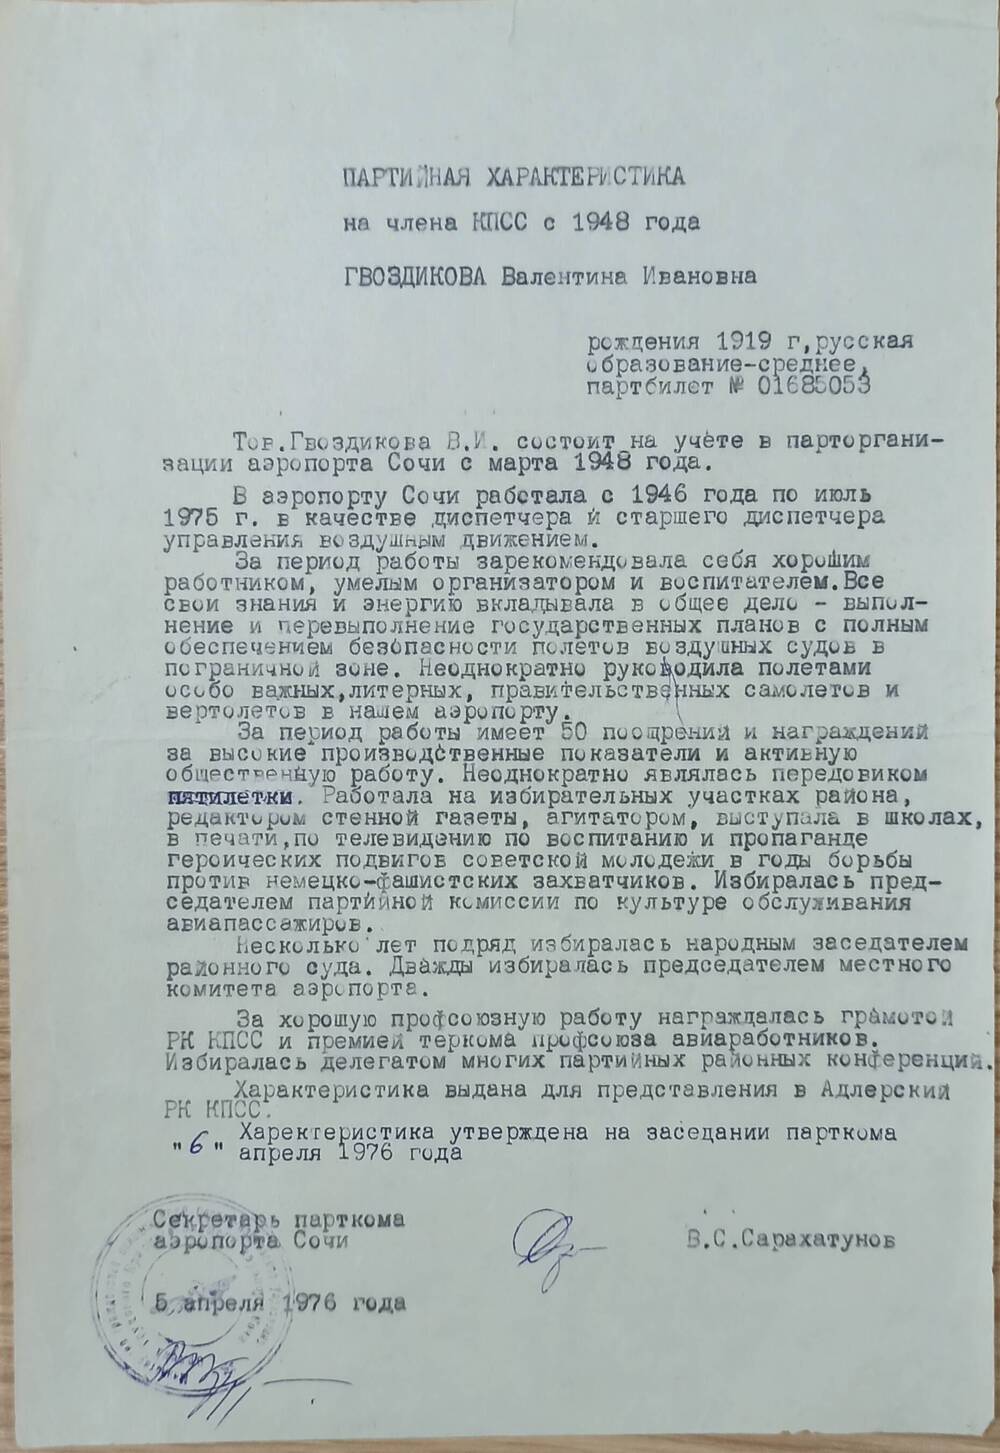 Партийная характеристика на Гвоздикову В.И. секретаря парткома аэропорта г. Сочи 1976г.